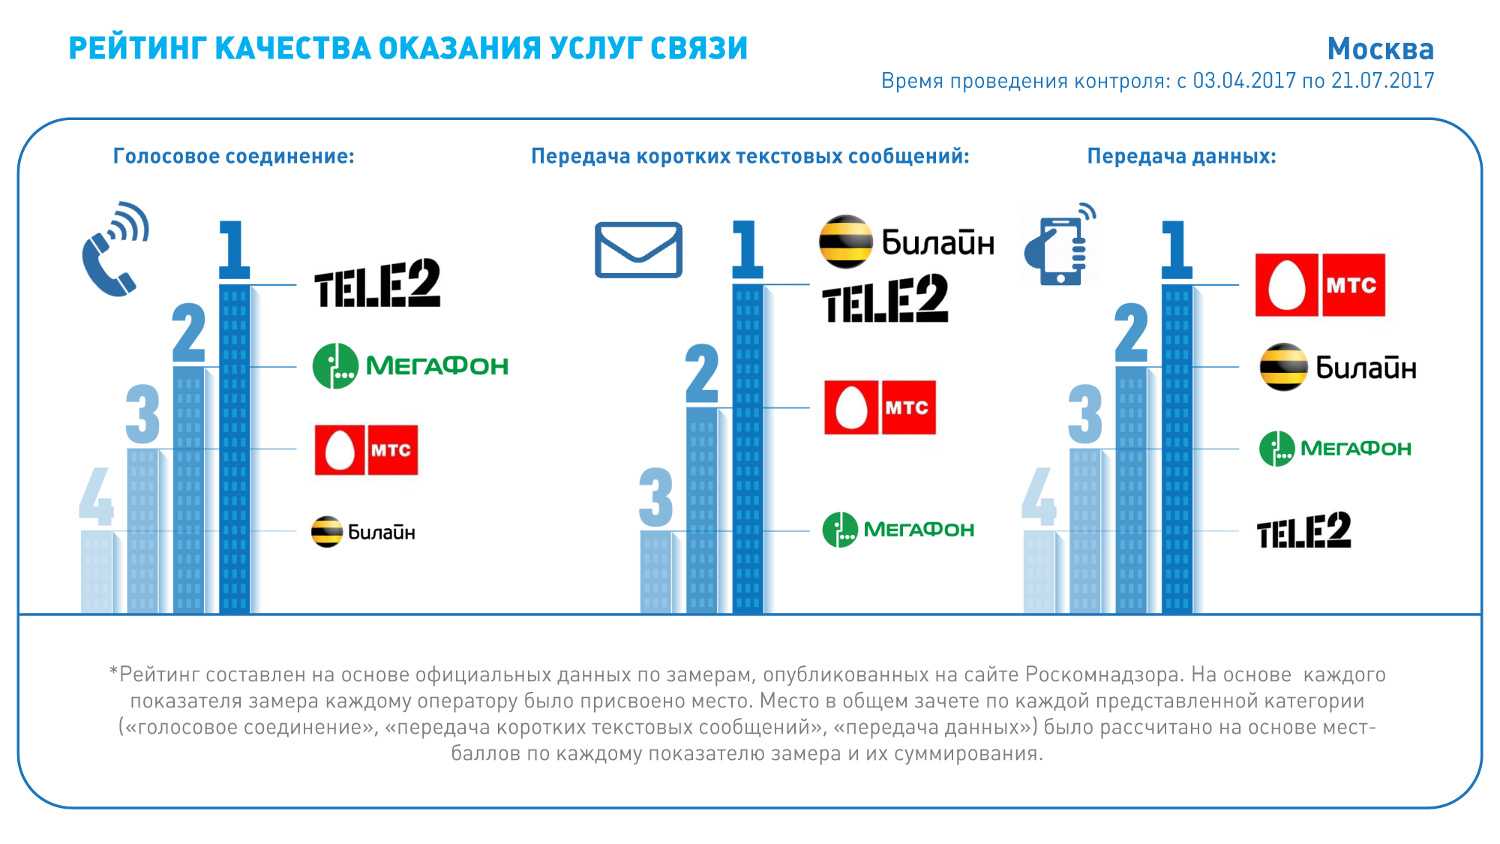 История сотовой связи в россии: от трёхкилограммовой nokia до lte